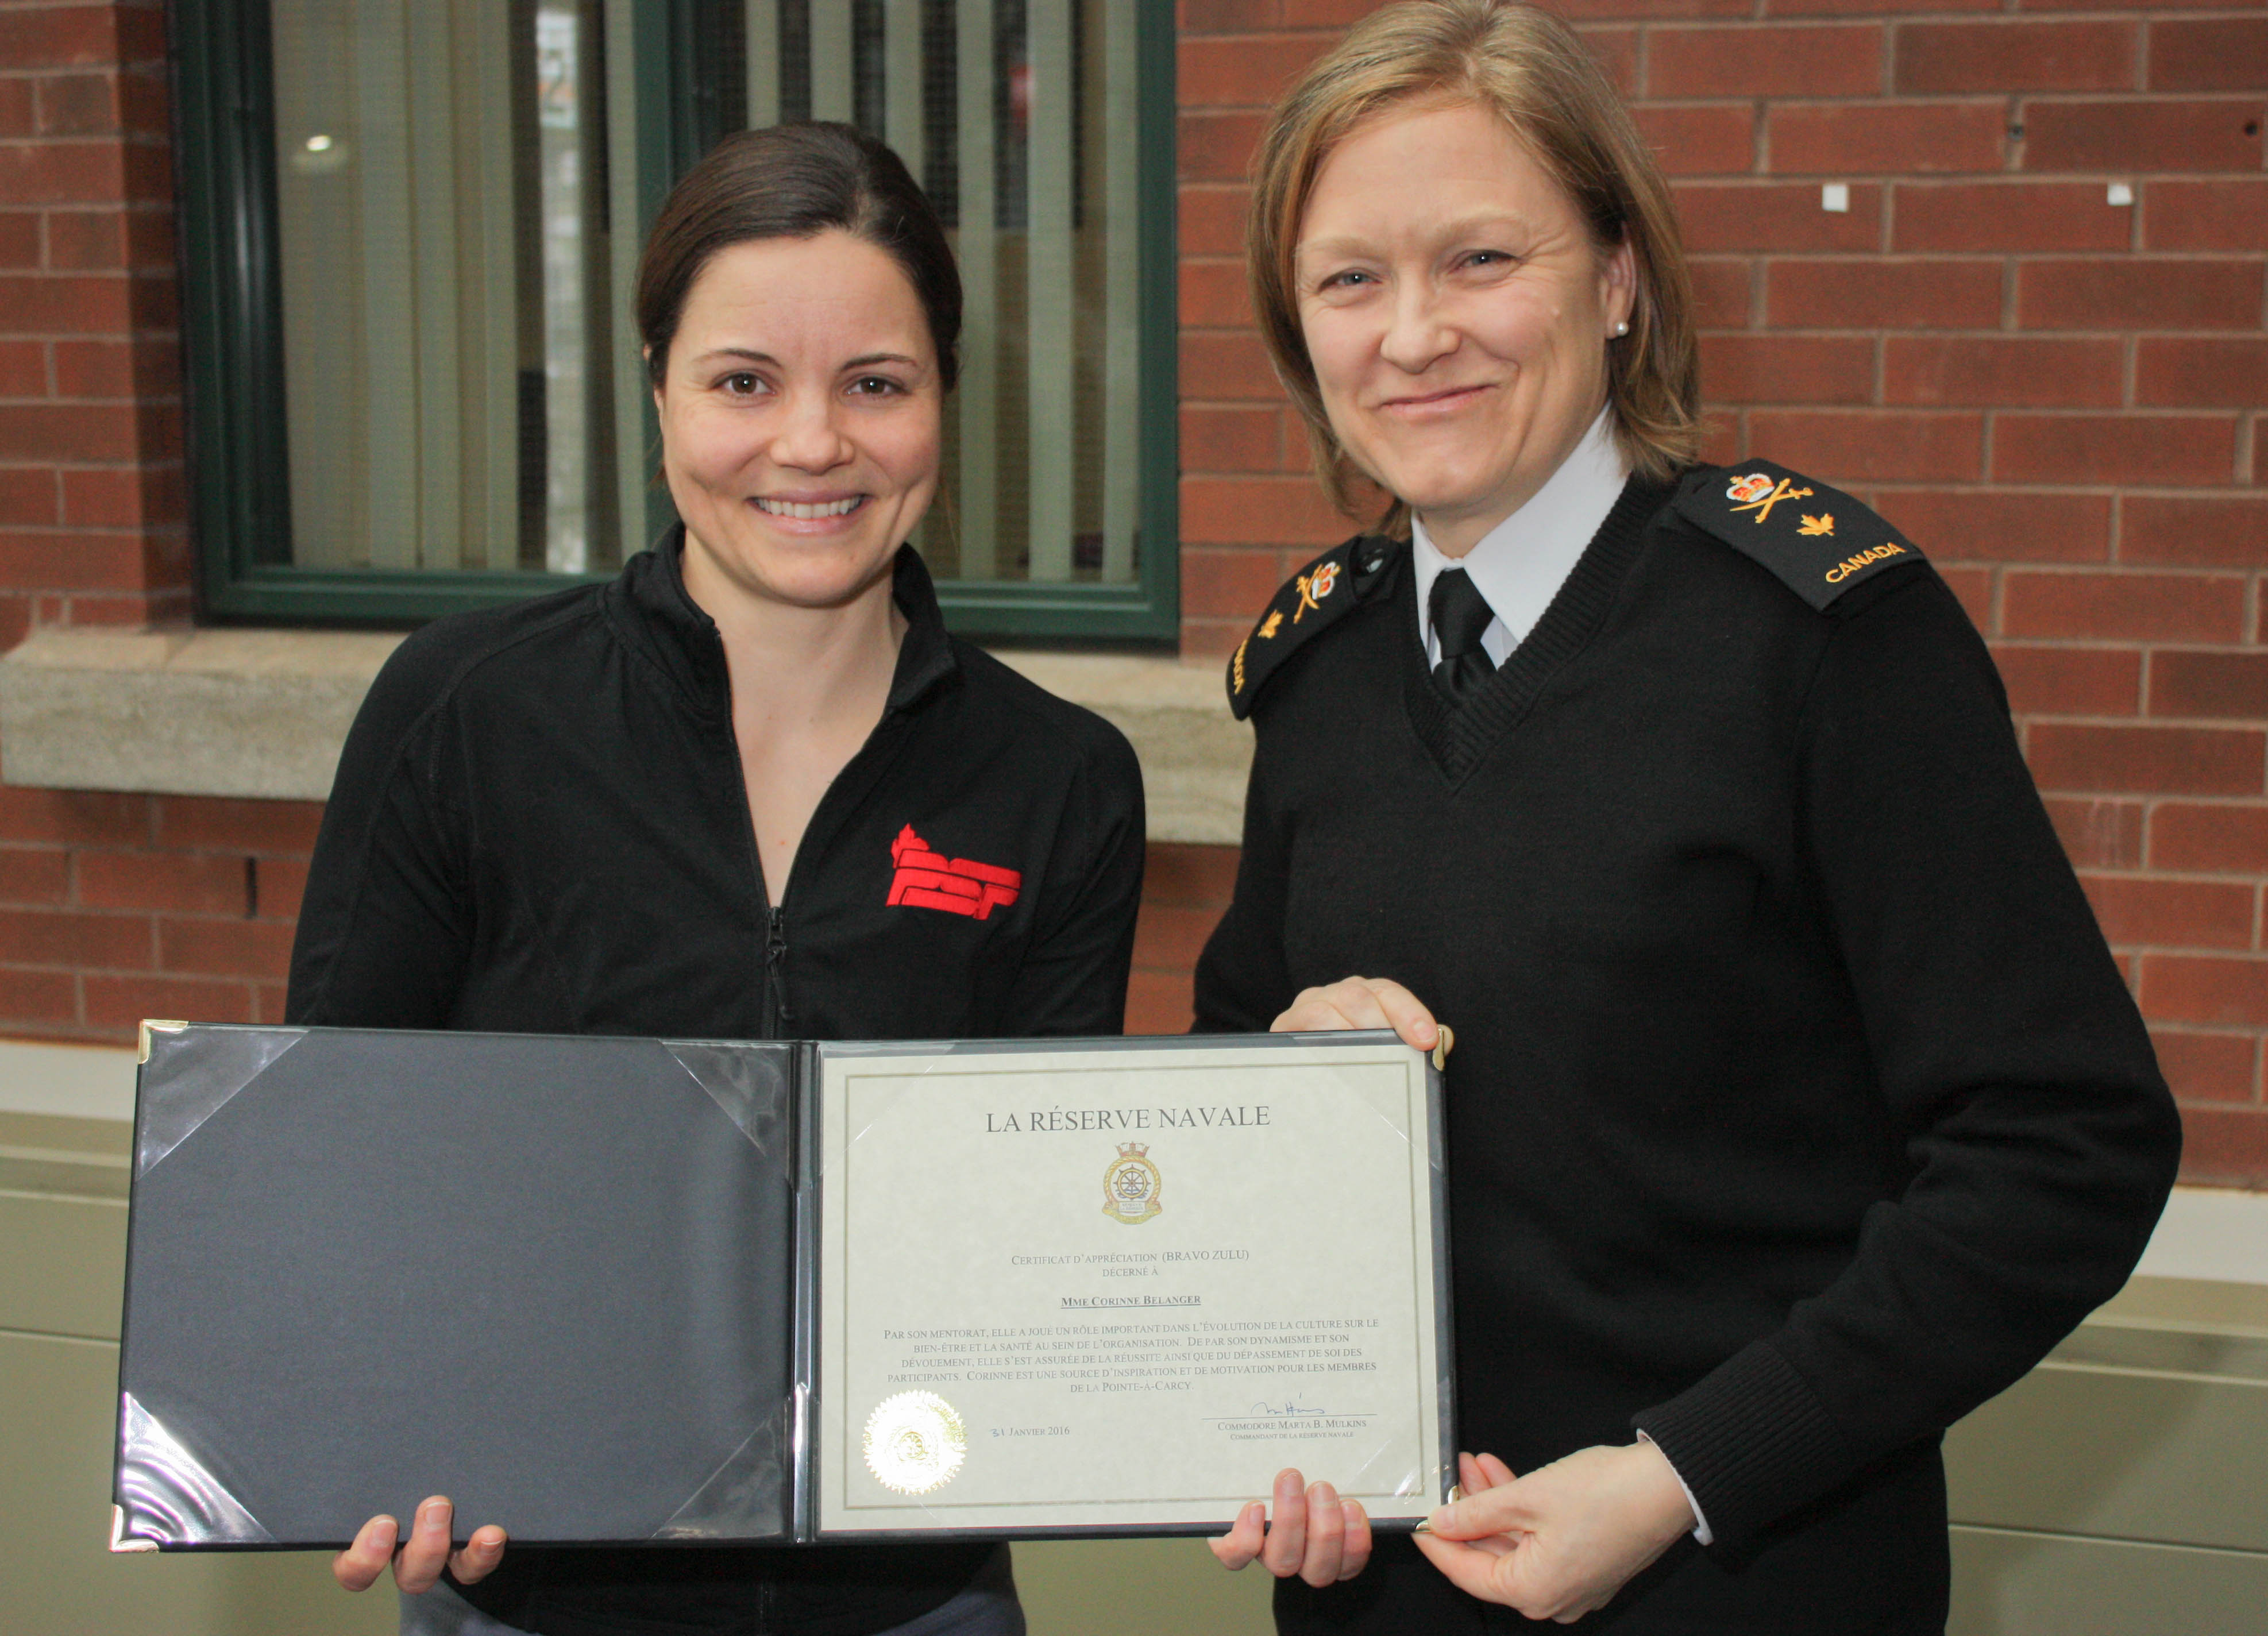 Mme Corinne Bélanger reçoit le « Bravo Zulu » du commandant de la Réserve navale des mains du commodore Marta B. Mulkins, commandant de la Réserve navale, au Quartier général de la Réserve navale à Québec, le 2 février 2016. 